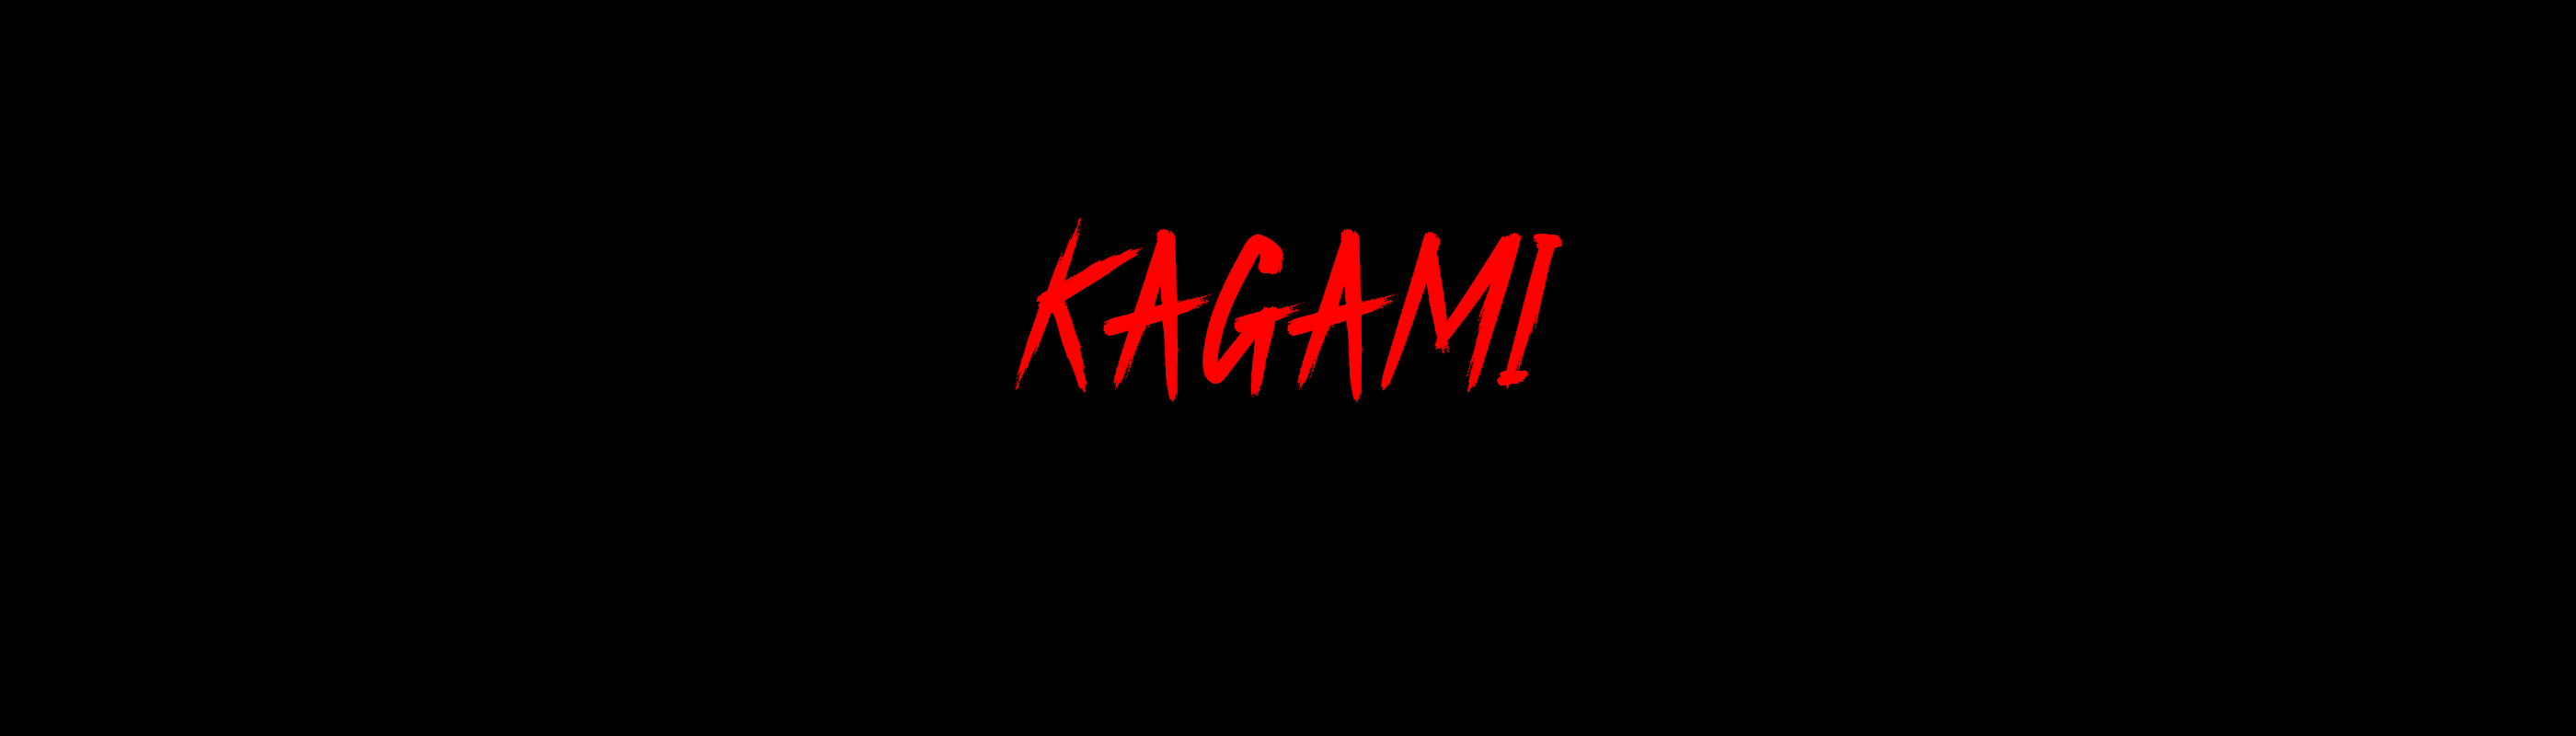 10KTF Kagami